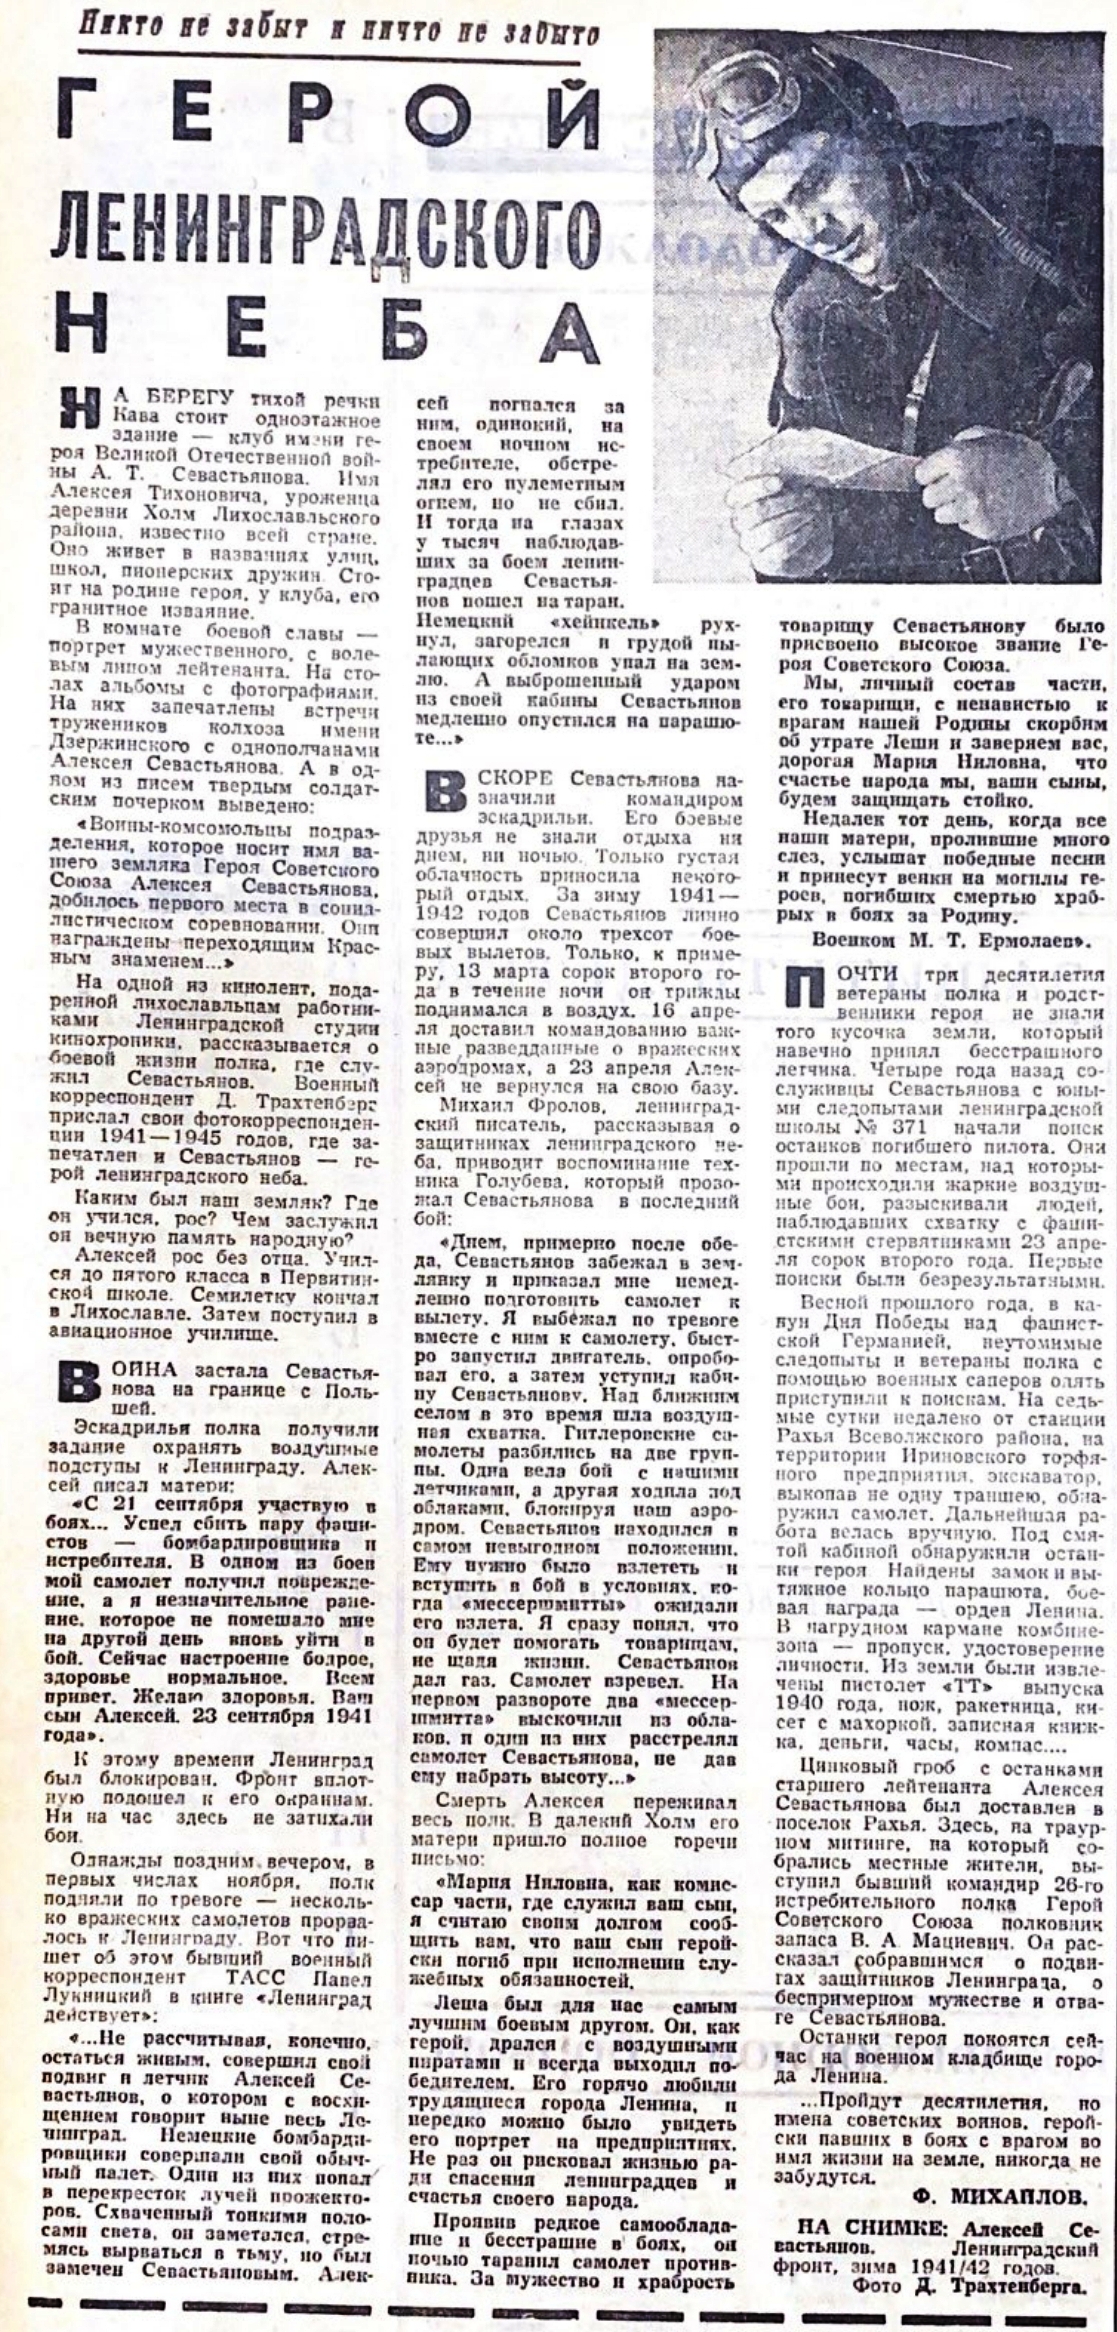 Статья о Севастьянове А.Т. в газете Калининская правда от 19.08.1972 г.